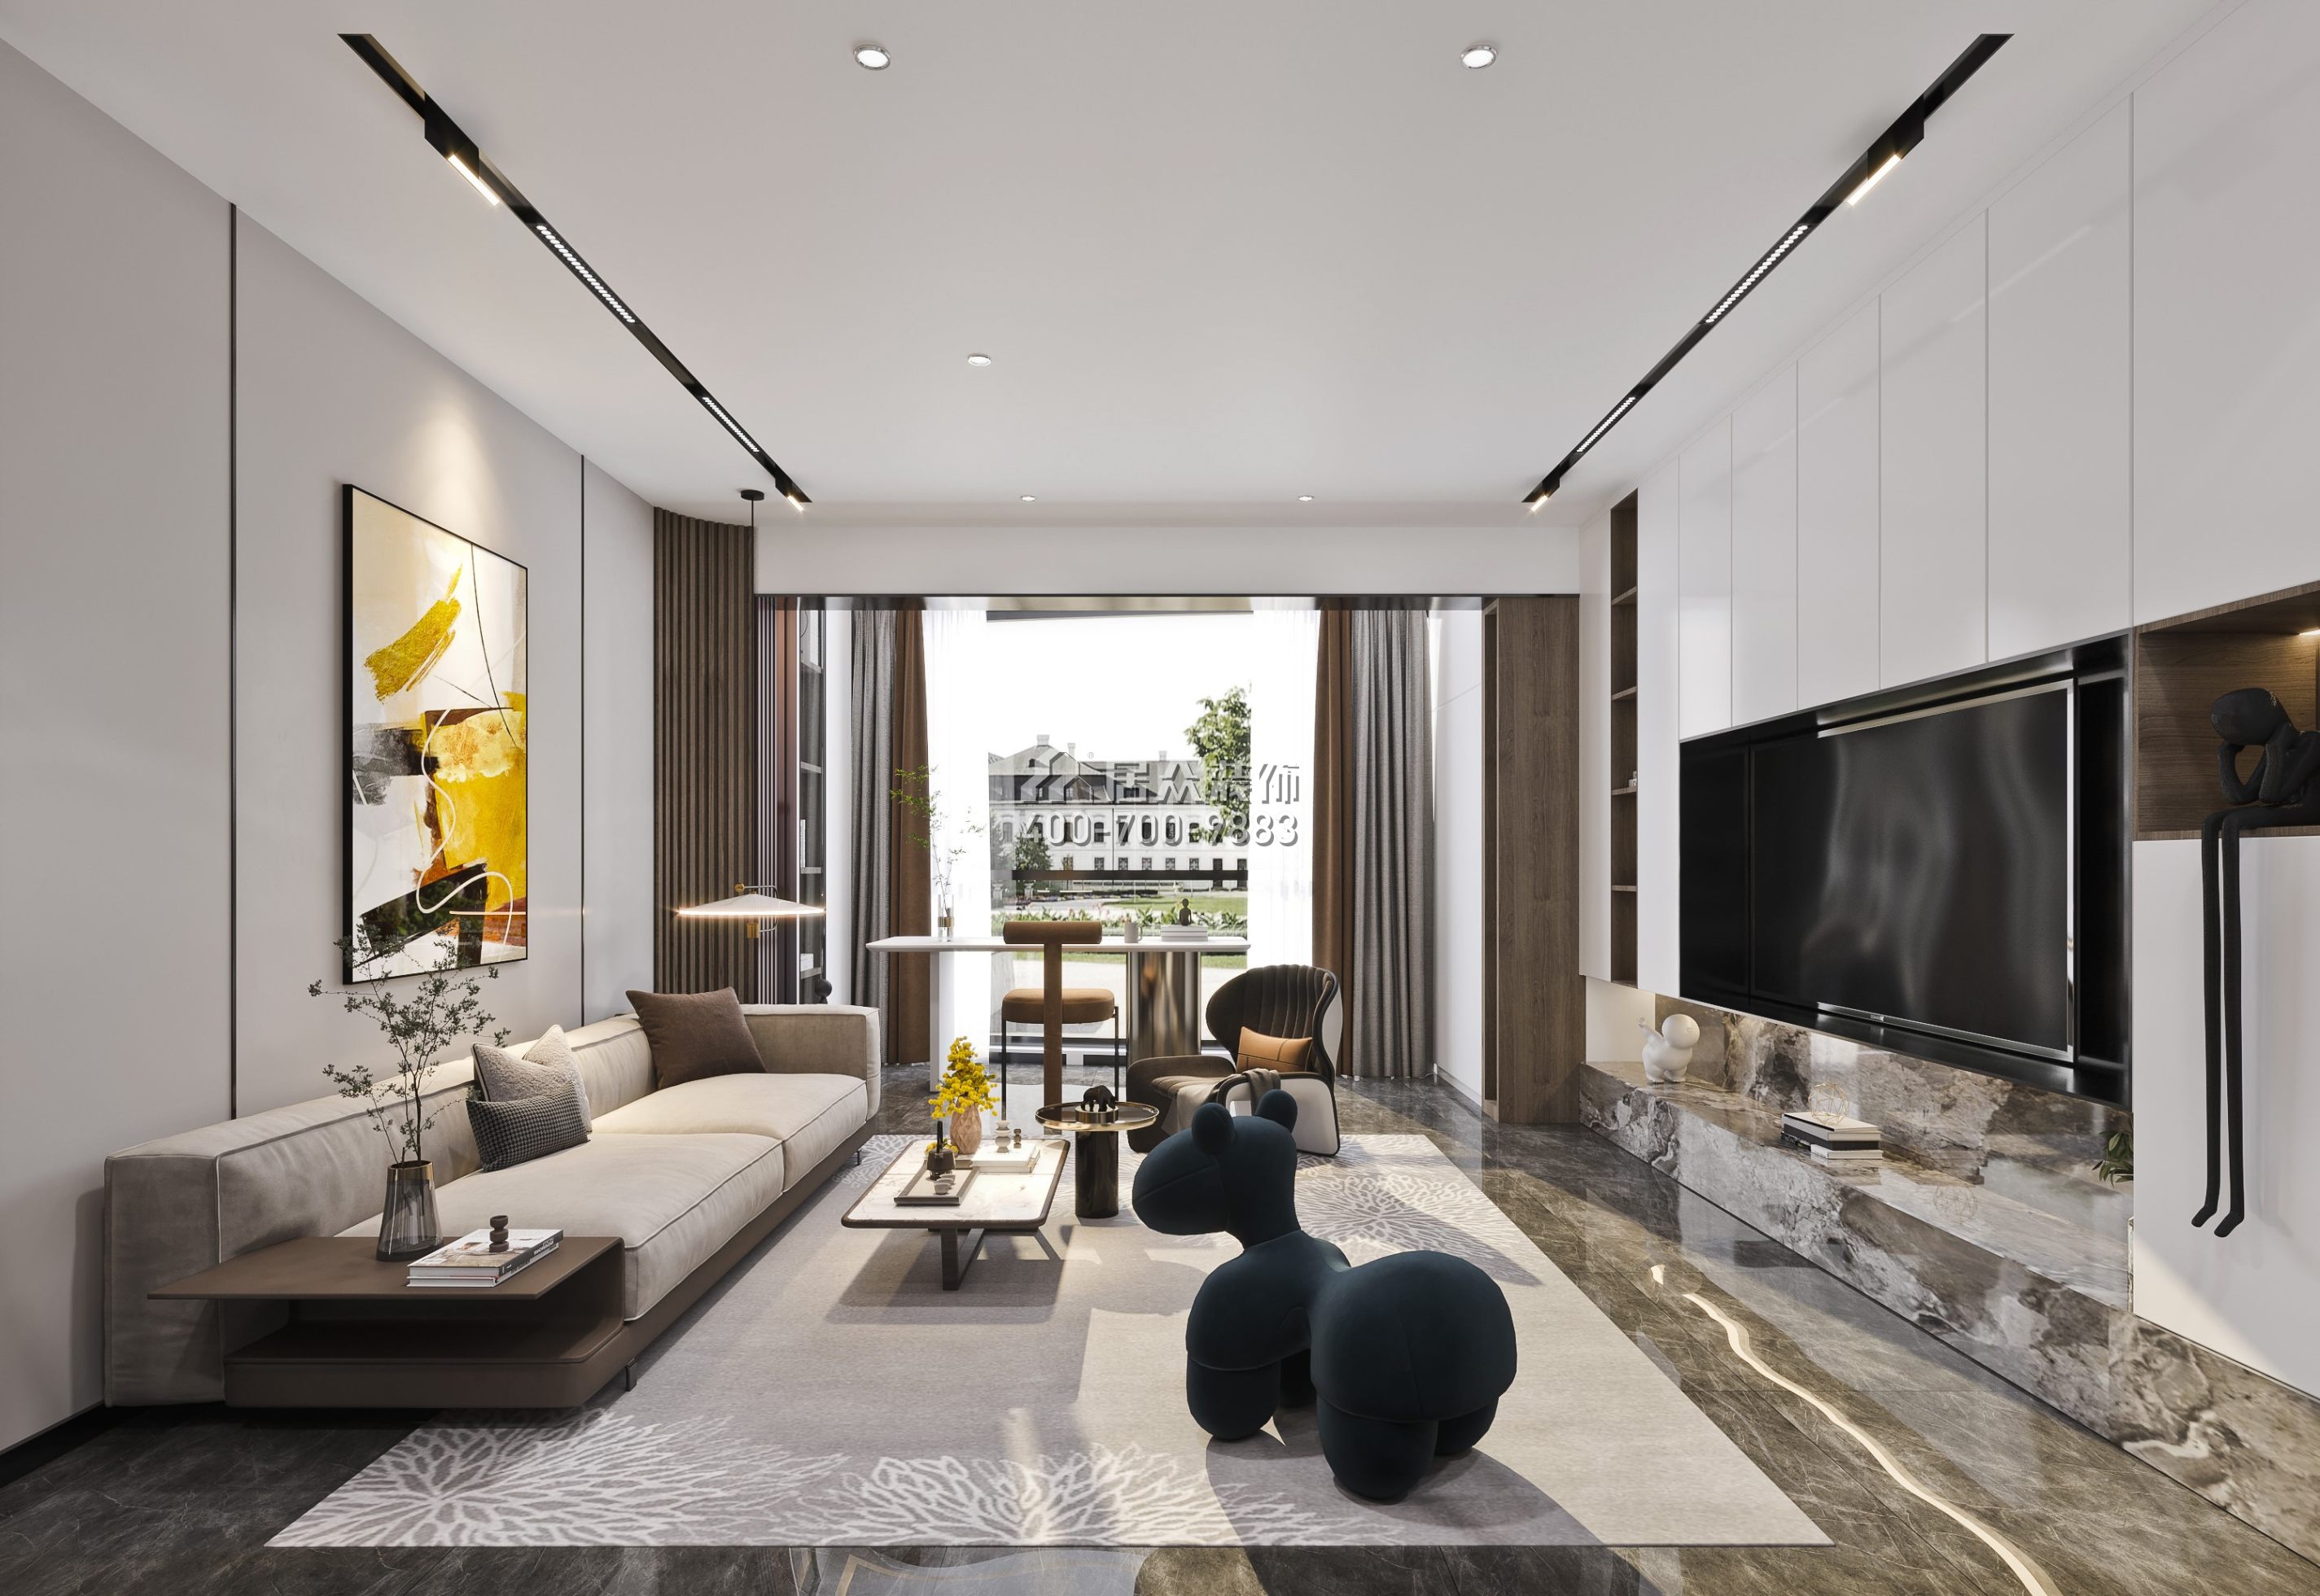 蔚藍海岸二期120平方米現代簡約風格平層戶型客廳裝修效果圖